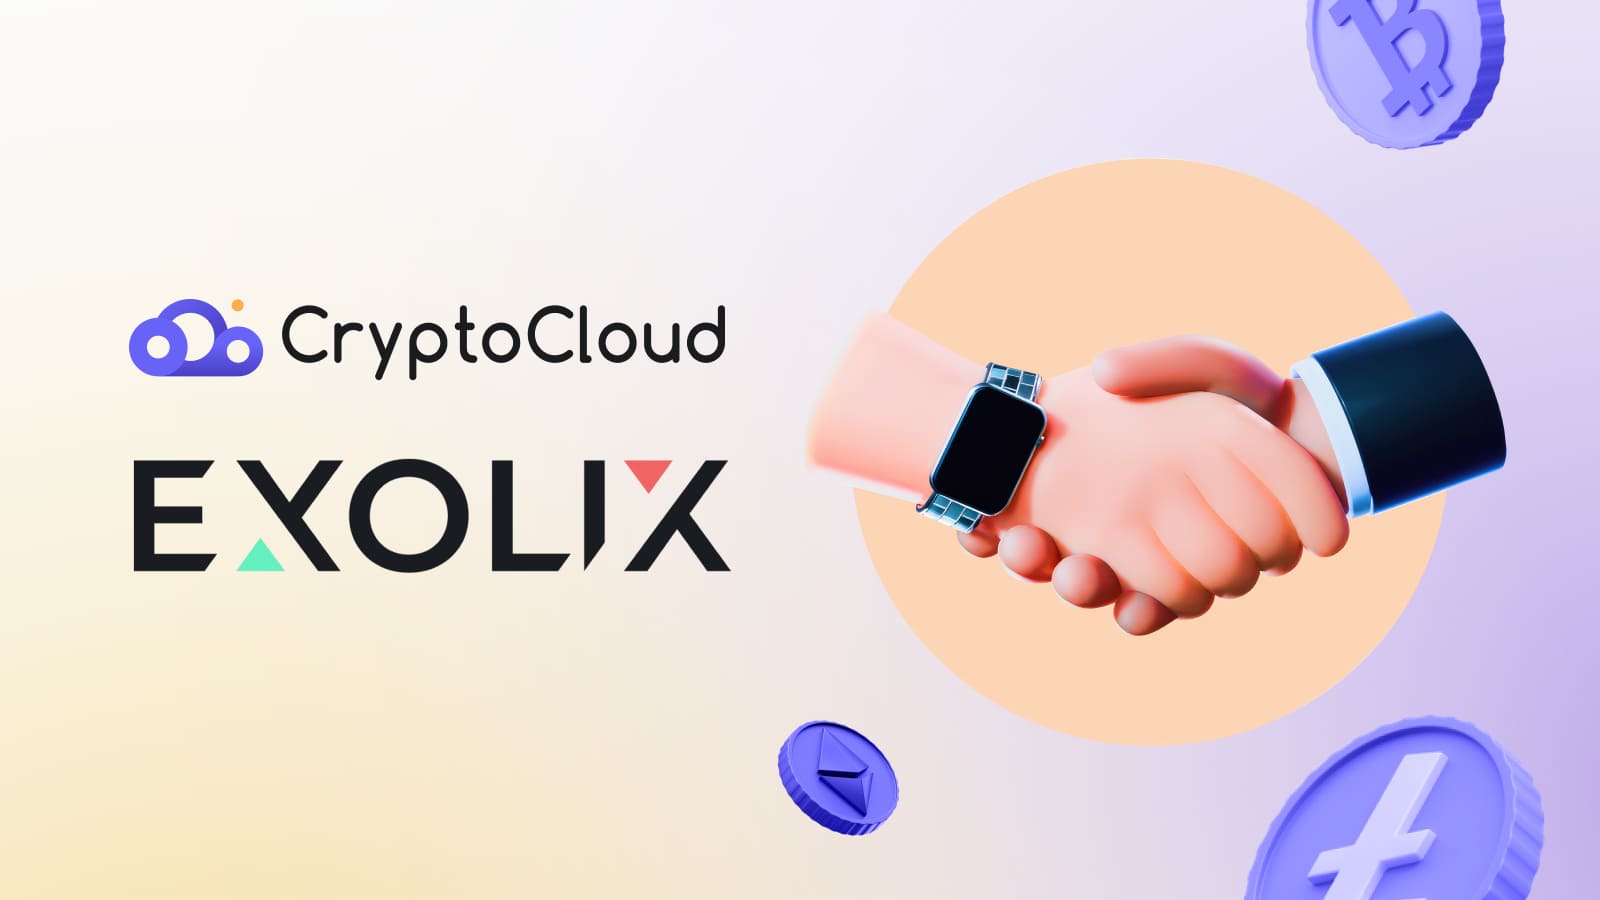 Быстрый и надежный обмен 500+ криптовалют благодаря сотрудничеству CryptoCloud и Exolix.